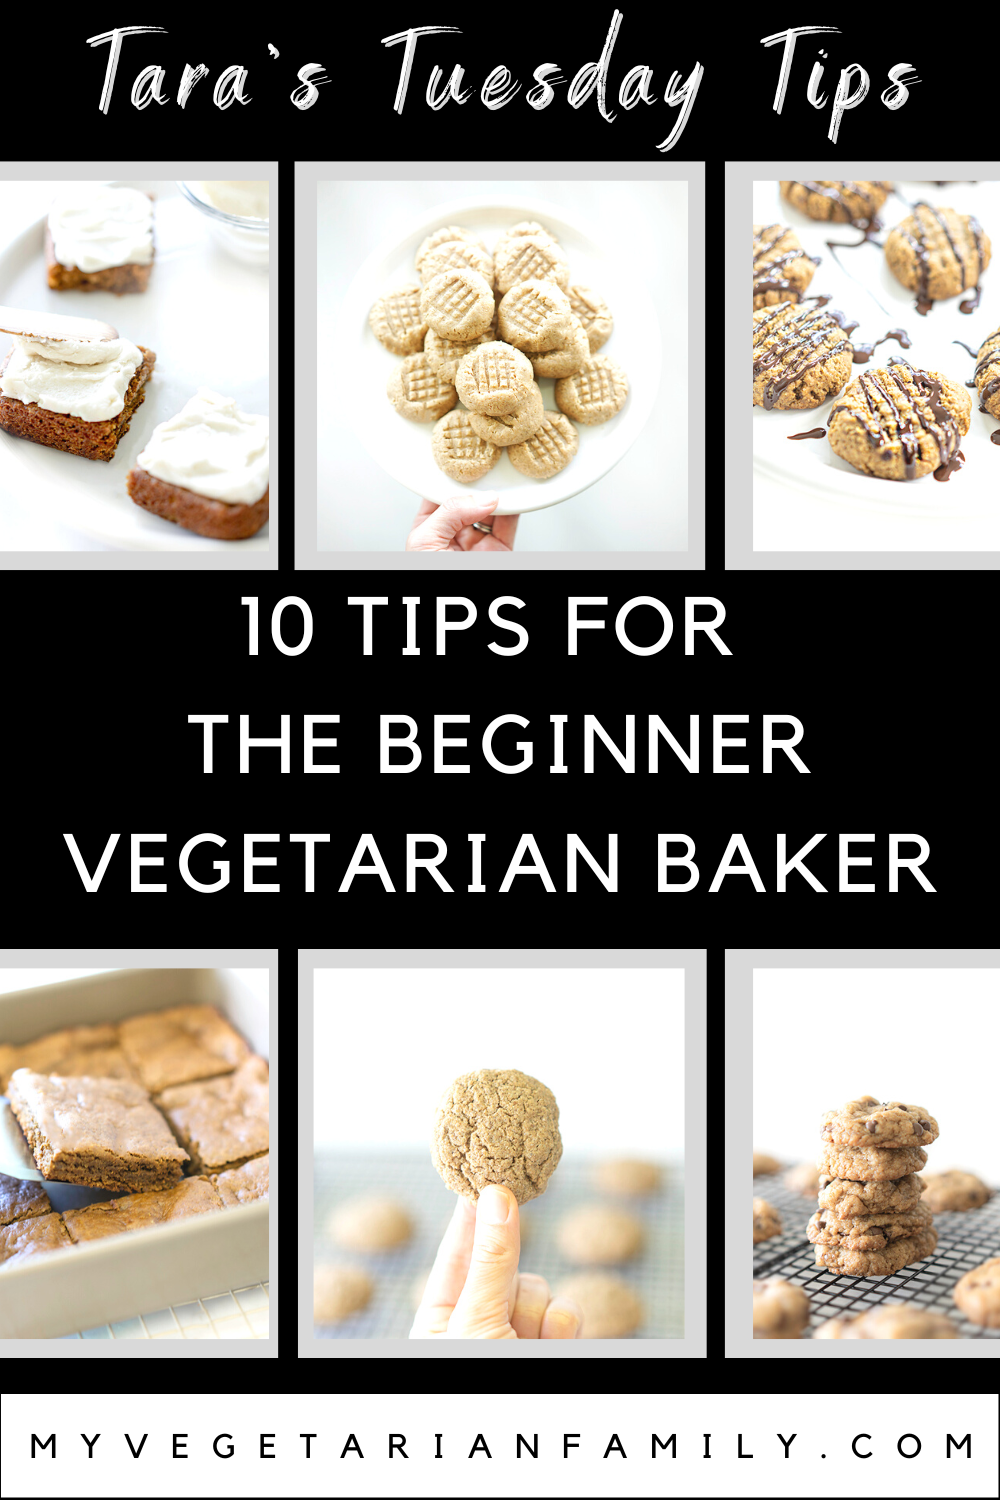 10 Tips For the Beginner Vegetarian Baker | My Vegetarian Family | Tara's Tuesday Tips #vegetarianbakingtips #plantbasedbakingtips